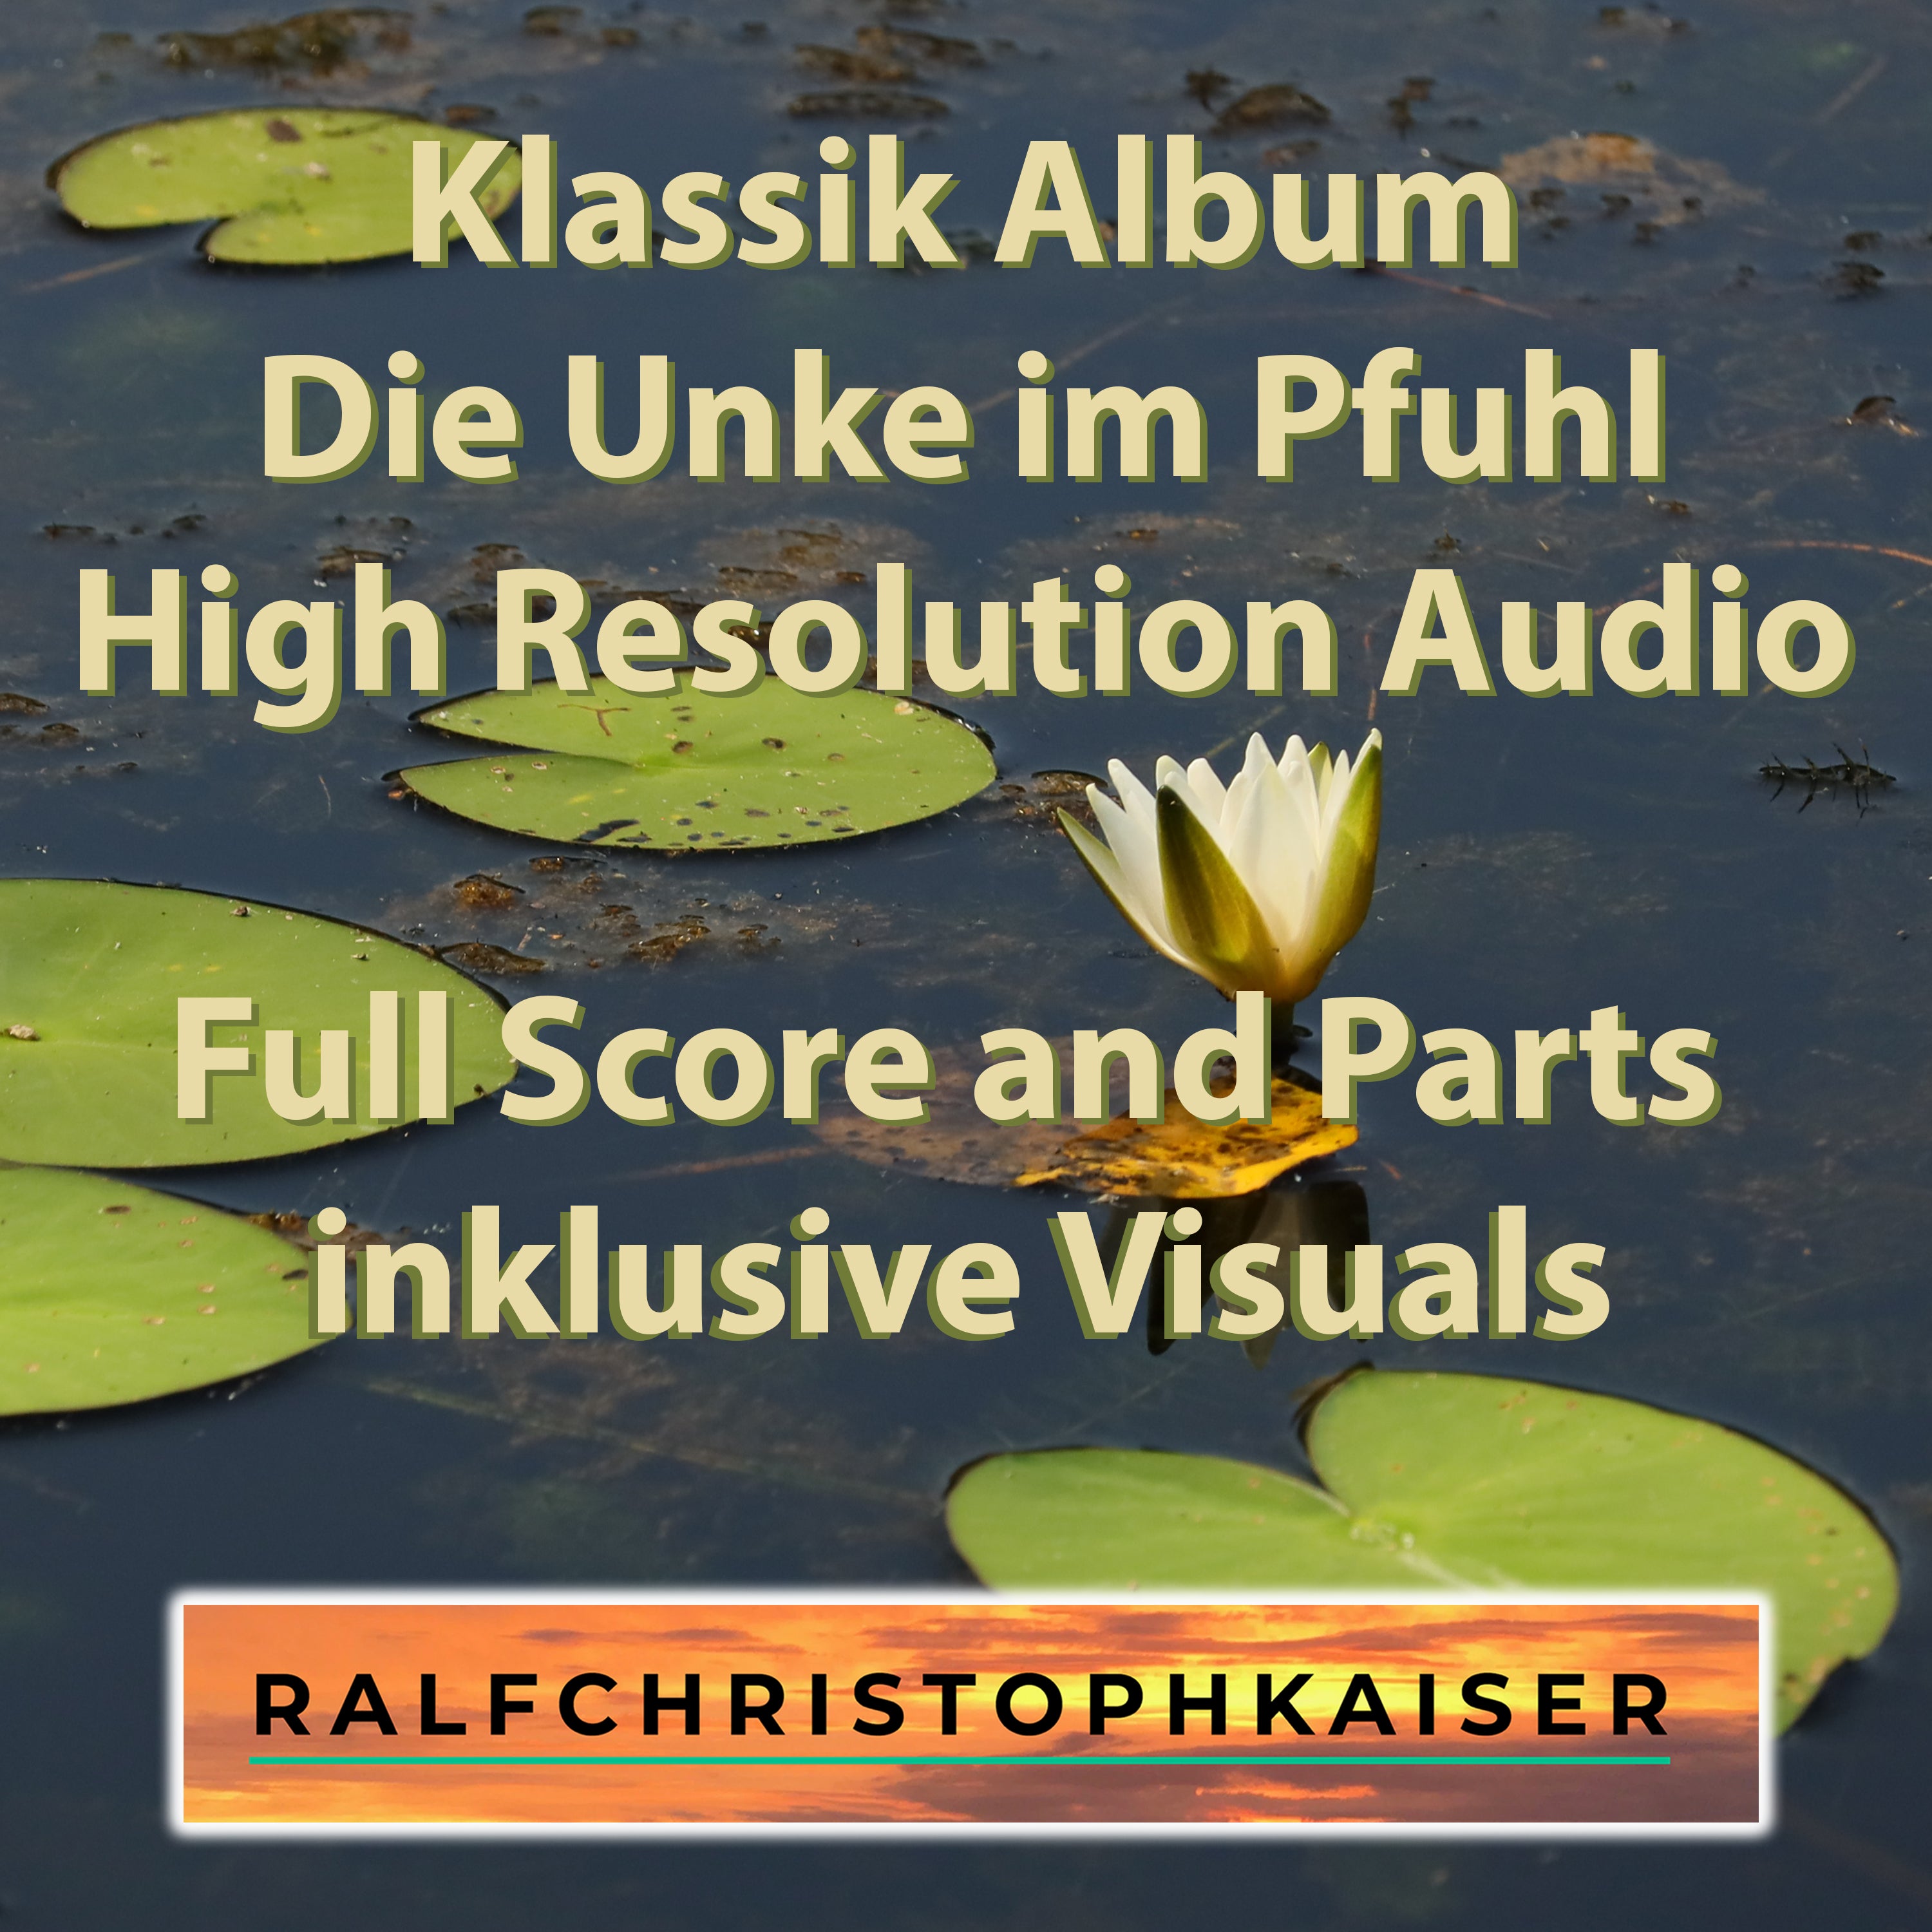 neues Klassik Album: "Die Unke im Pfuhl" by Ralf Christoph Kaiser mit 16 Orchester Werken und 26 unterschiedlichen Aufnahmen in High Resolution Audio inklusive Full Score and Parts inklusive original Visuals - ralfchristophkaiser.com Musik und Noten